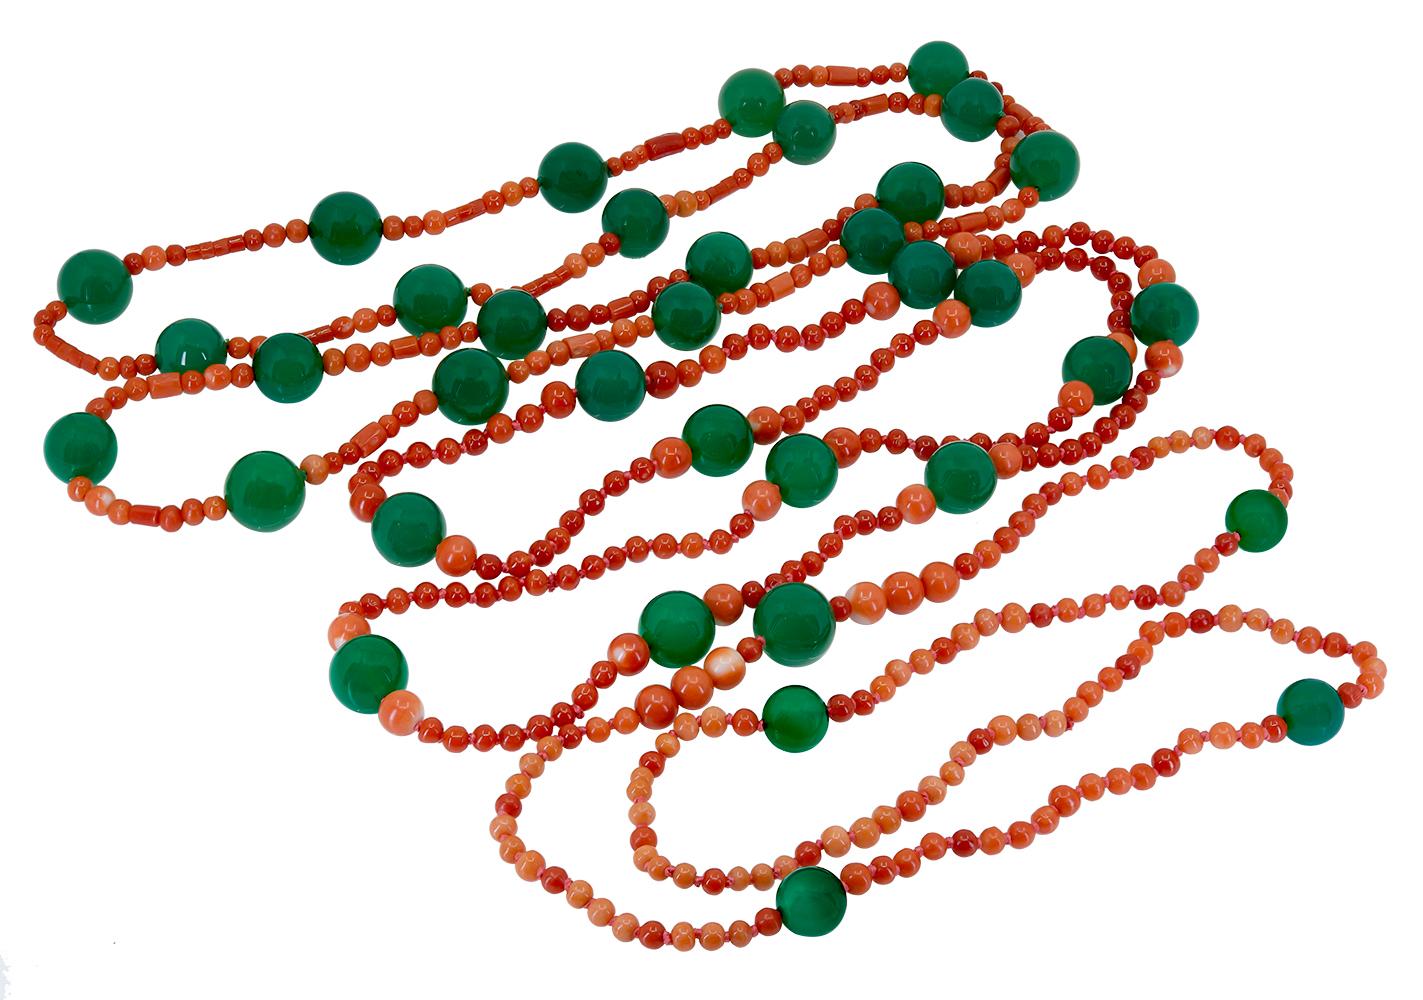 Eine dreisträngige Halskette aus roter Koralle und grünem Onyx, mit den Maßen 24 Zoll, 26 Zoll und 30 Zoll. Jeder Strang besteht aus natürlichen, unbehandelten roten Korallen und grünen Onyxperlen. Die hellen, glänzenden grünen Onyx-Perlen haben